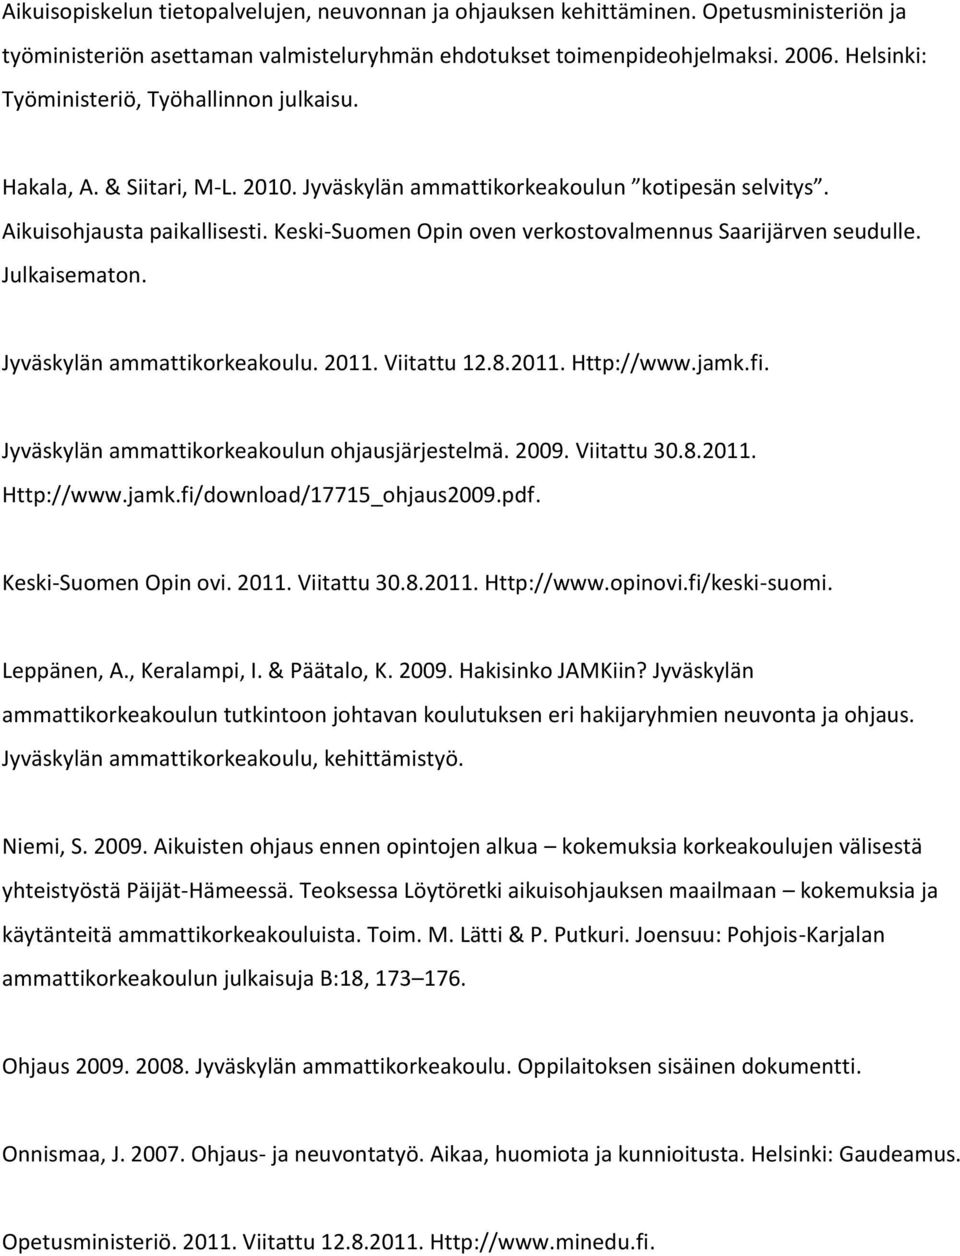 Keski-Suomen Opin oven verkostovalmennus Saarijärven seudulle. Julkaisematon. Jyväskylän ammattikorkeakoulu. 2011. Viitattu 12.8.2011. Http://www.jamk.fi.